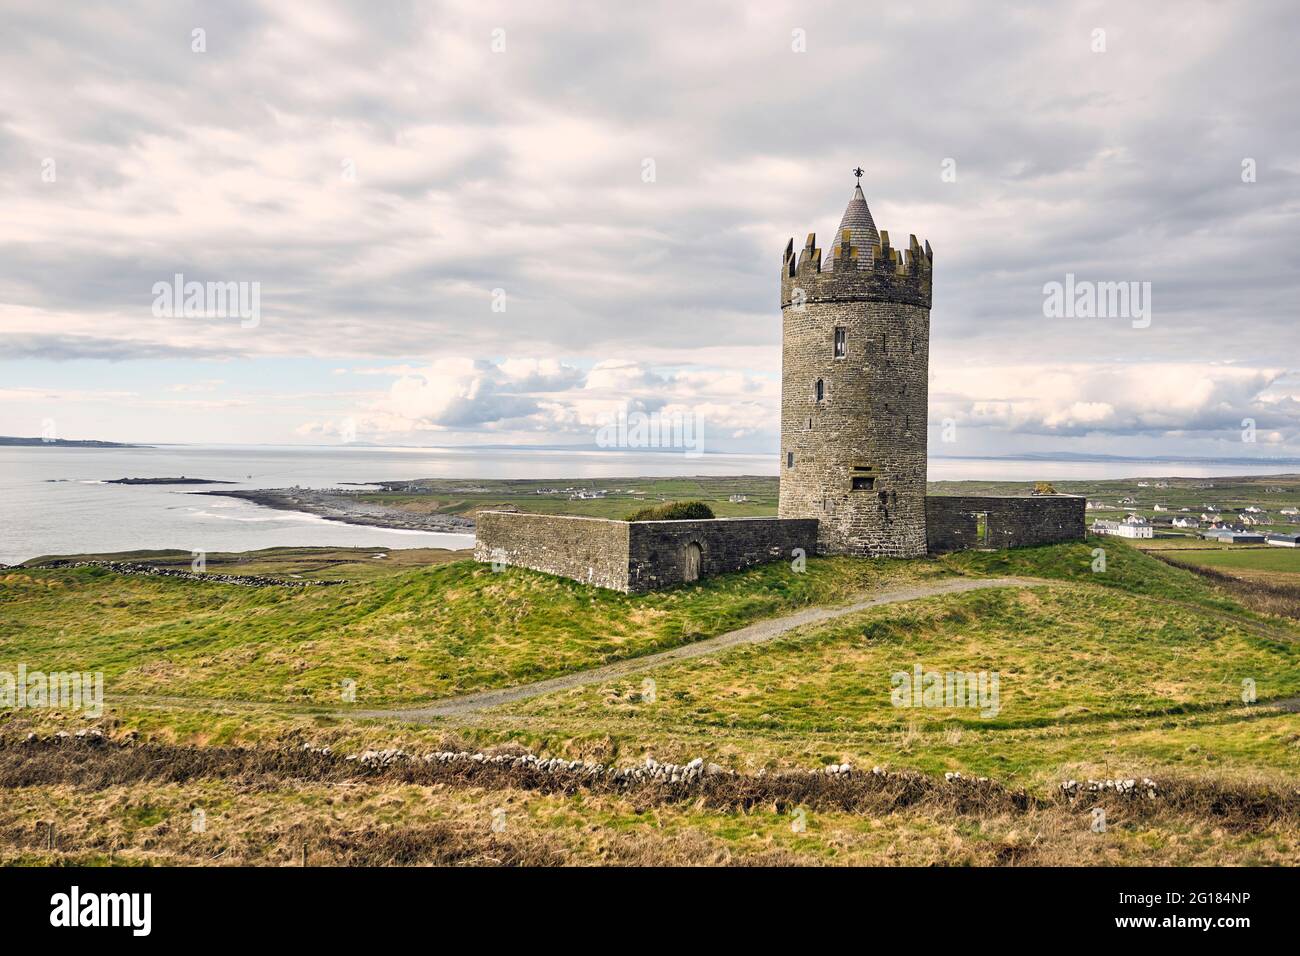 Le Château de Doonagore jour couvert avec vue sur la mer derrière, Ballycullaun, comté de Clare, Irlande, 2018 Banque D'Images